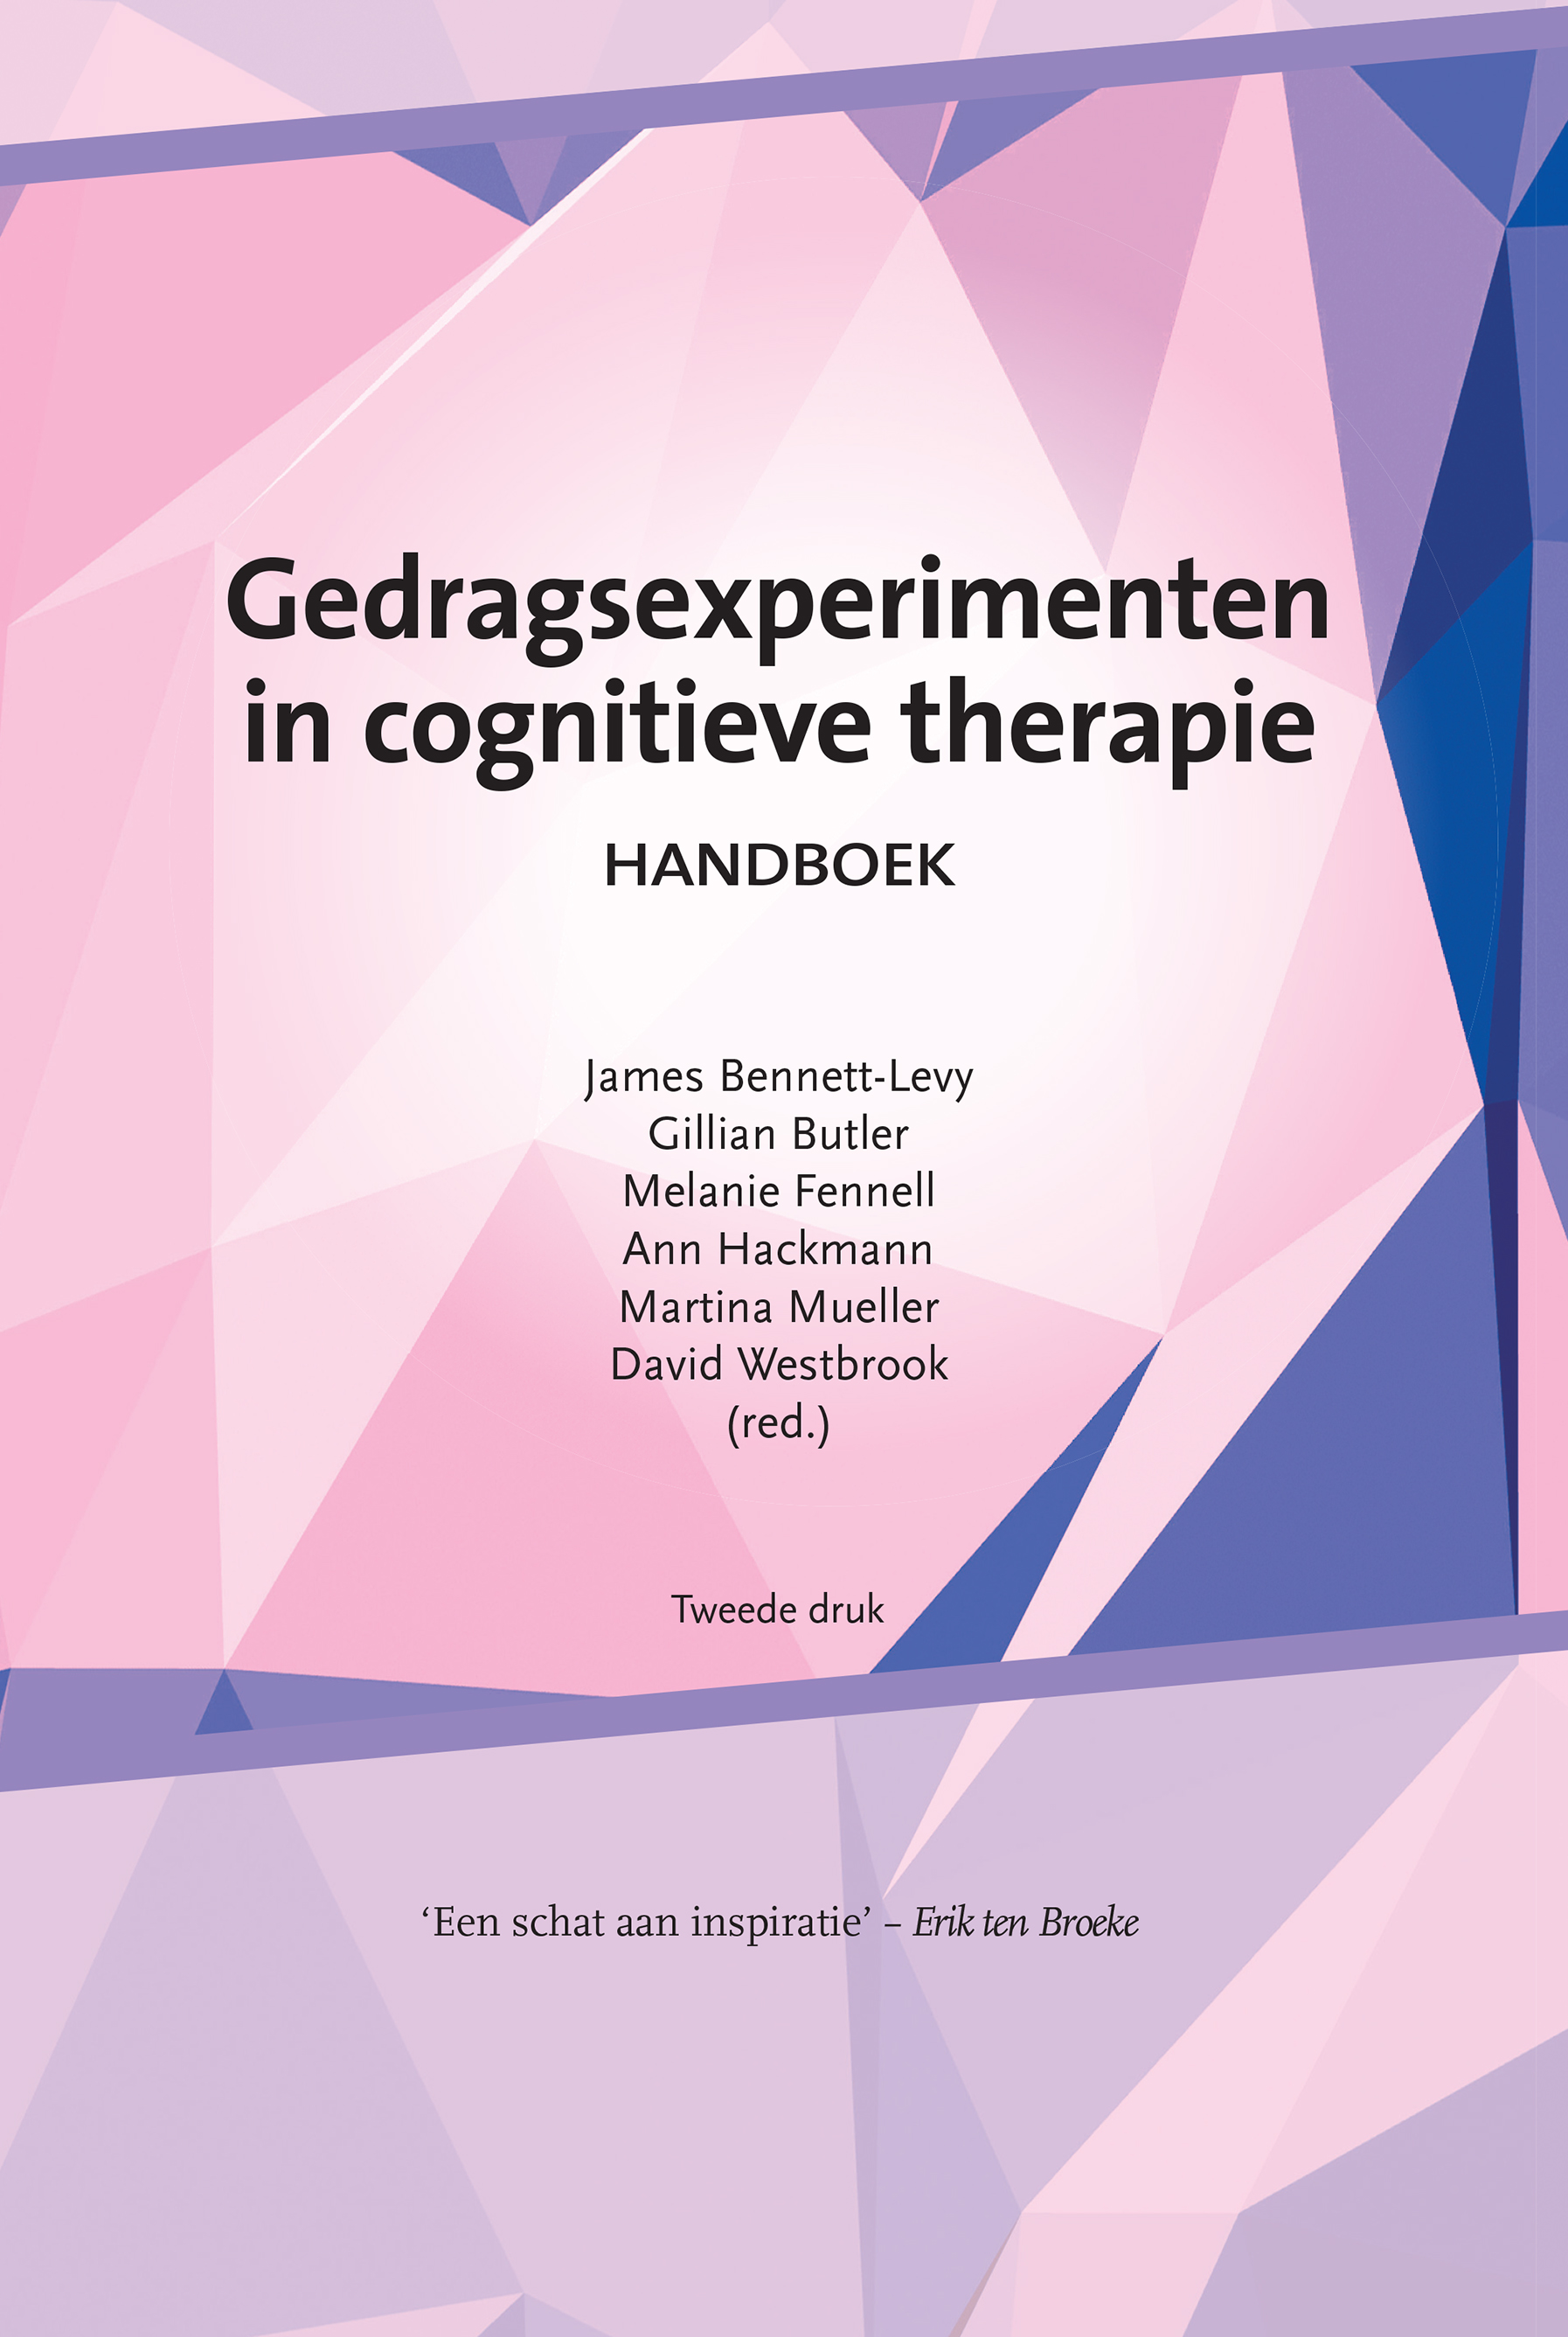 Gedragsexperimenten in cognitieve therapie